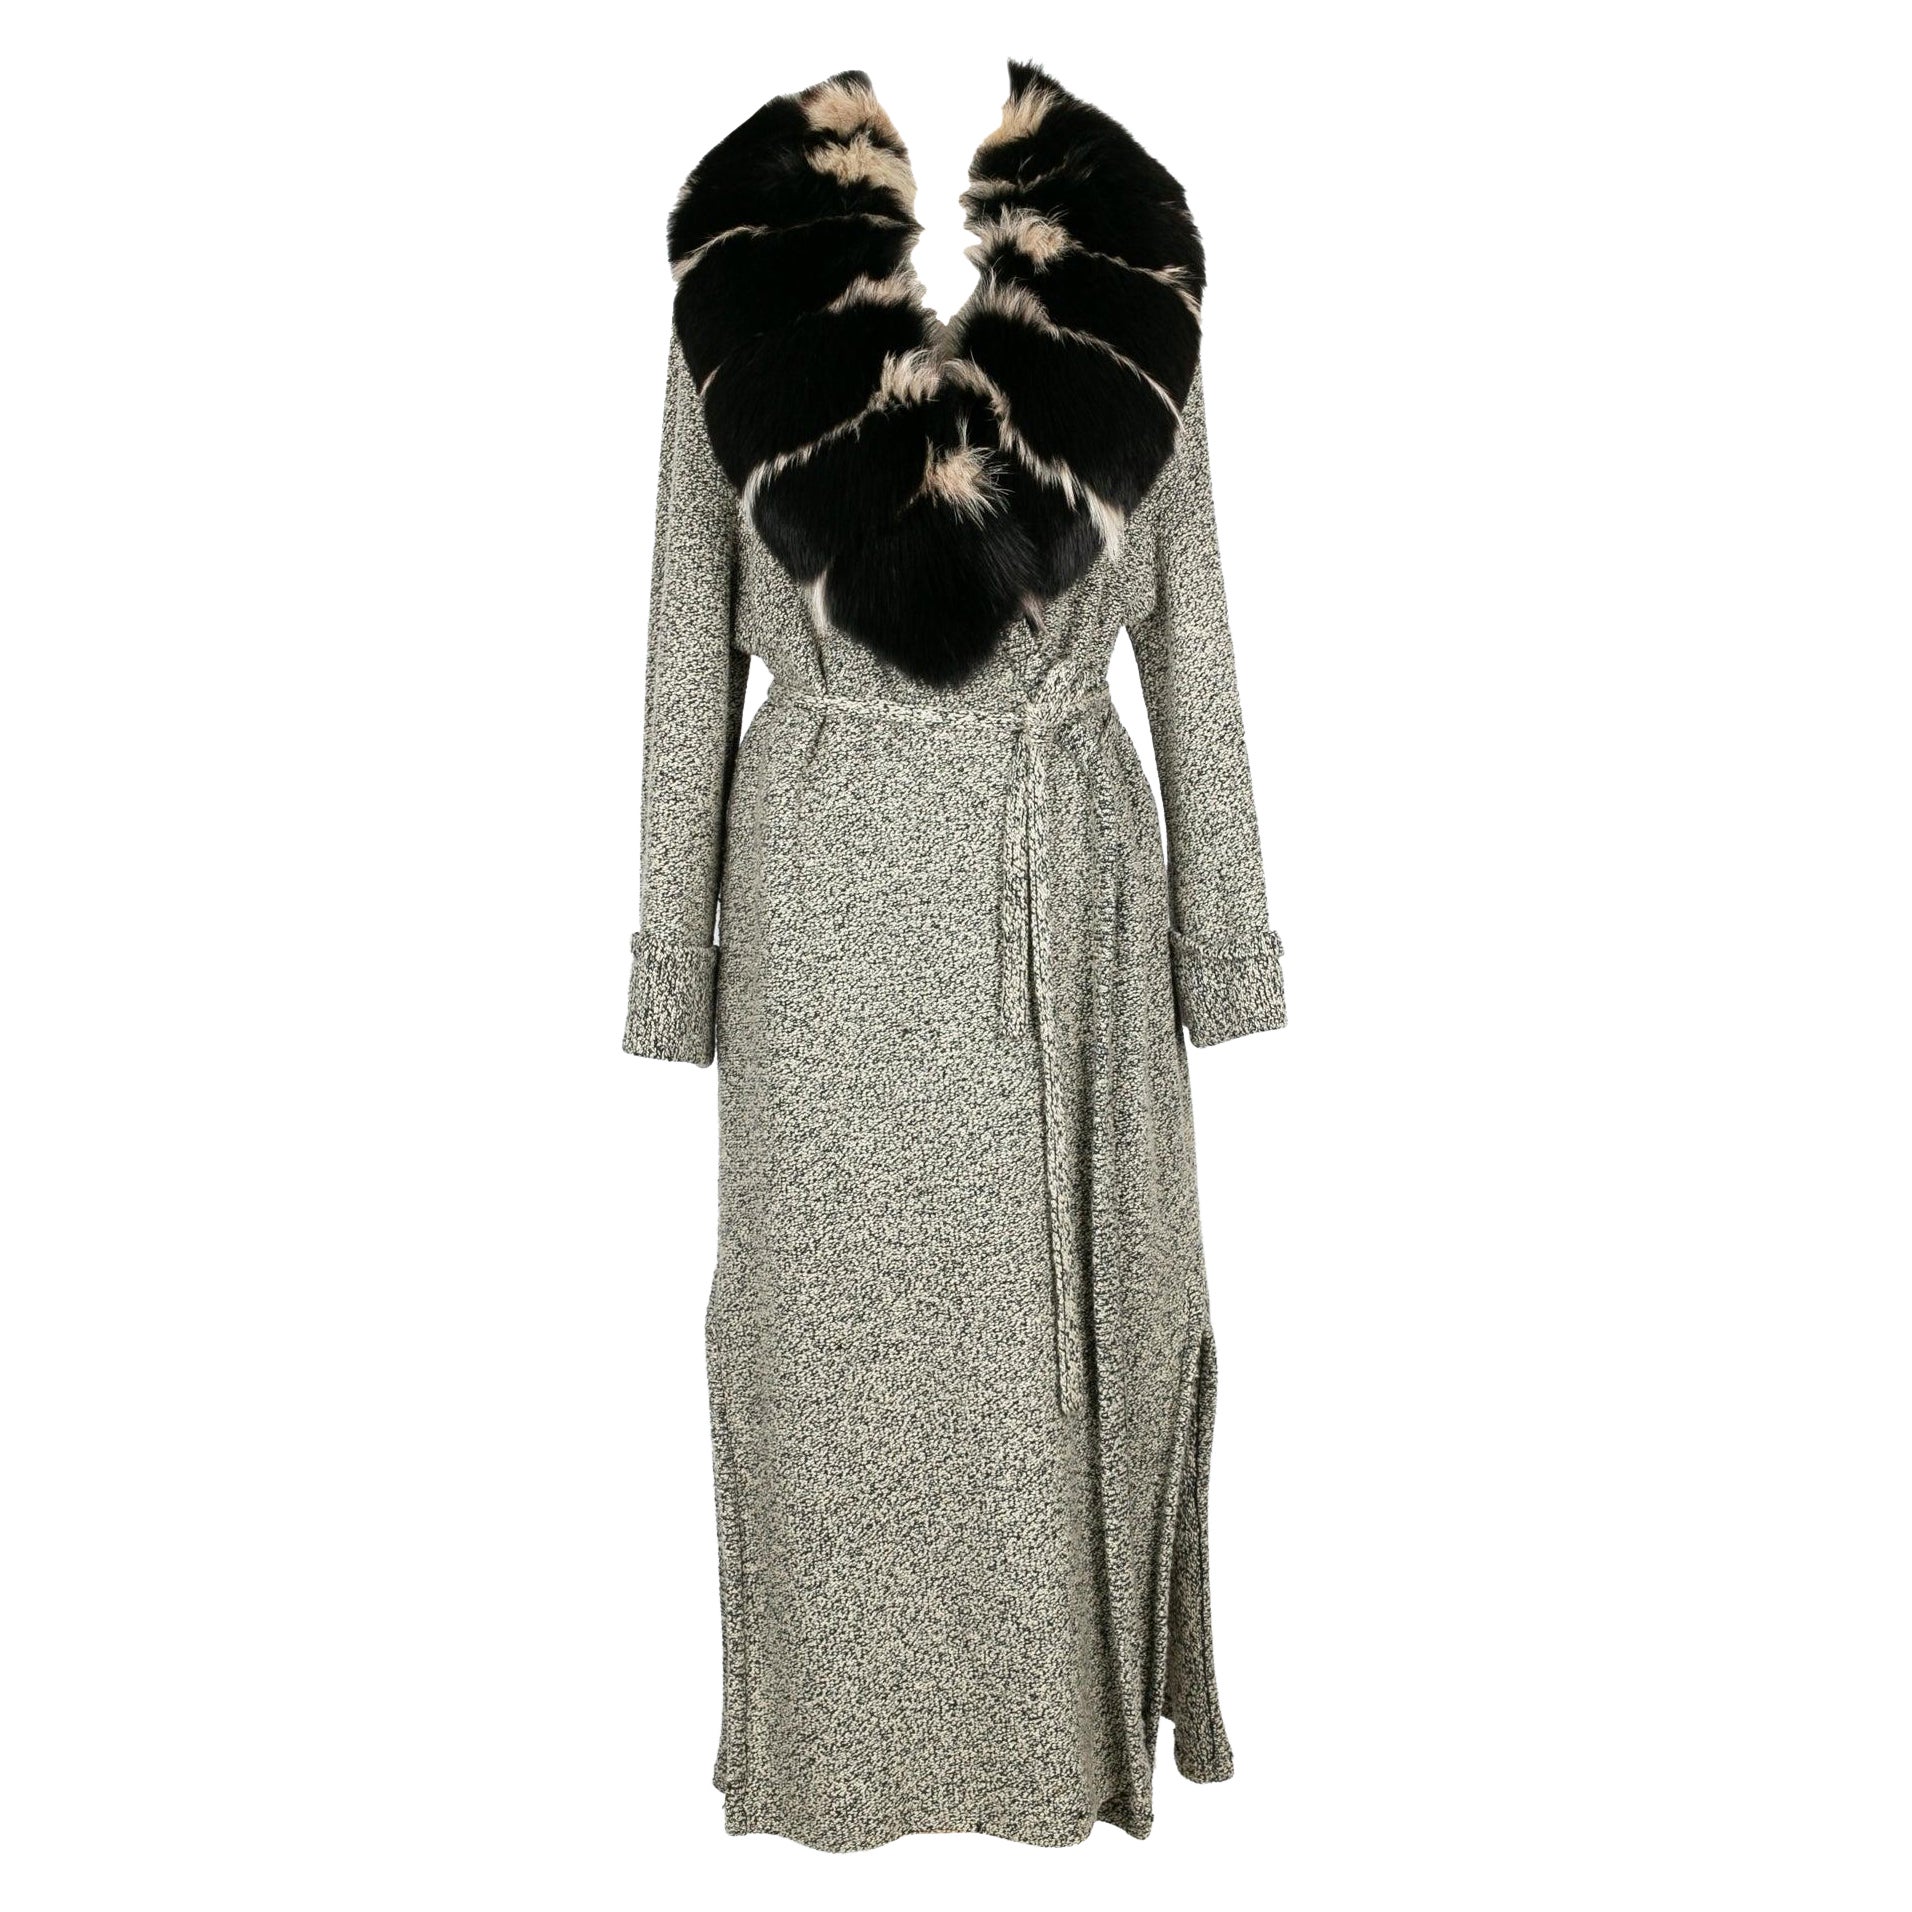 Jean-Louis Scherrer Long Coat in Black and Beige Wool, Size 40FR For Sale